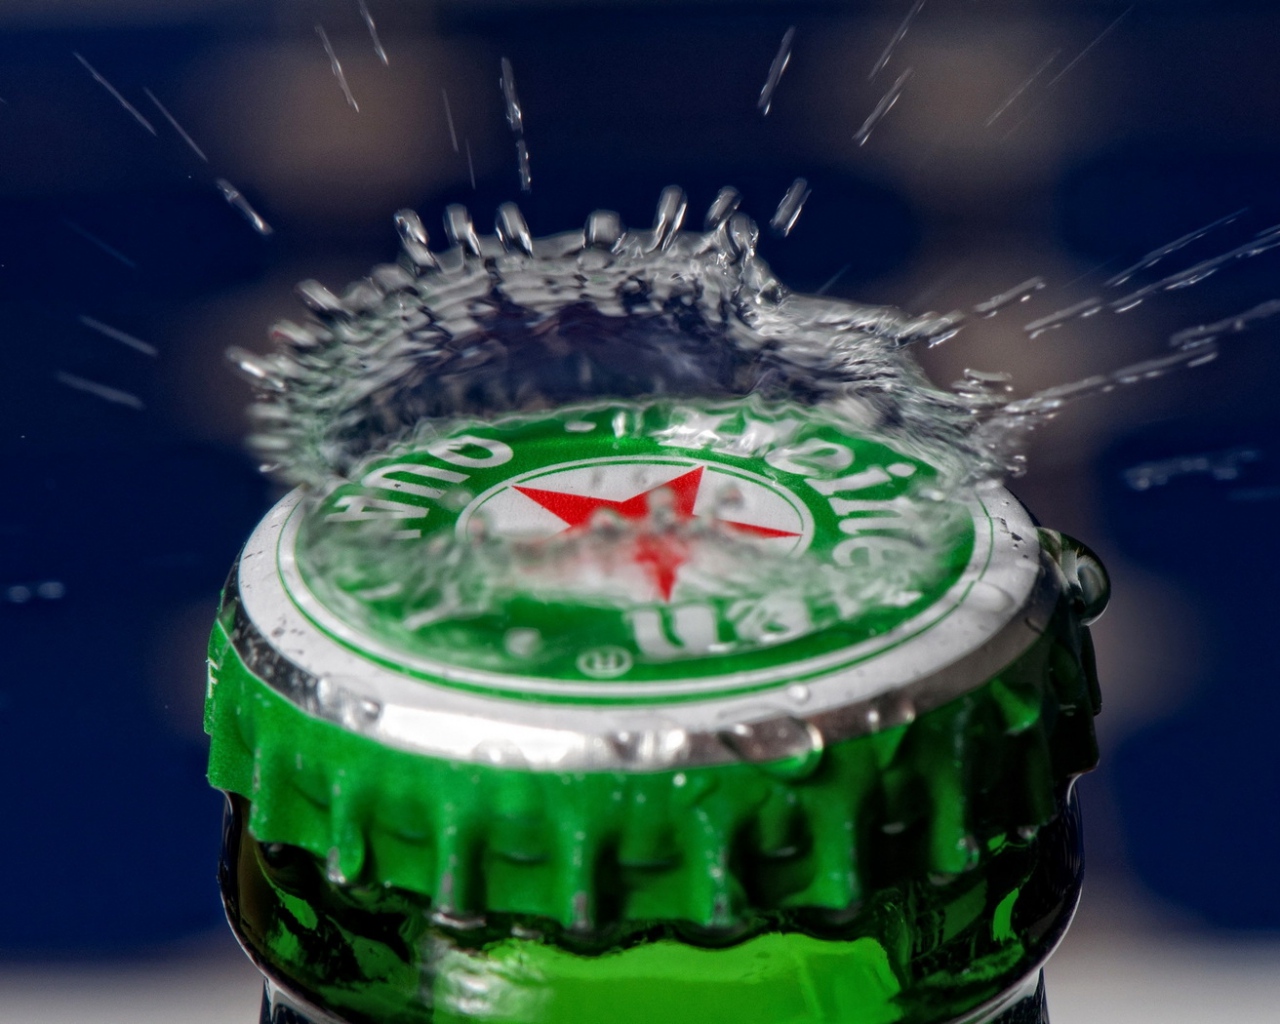 Heineken Beer Bottle